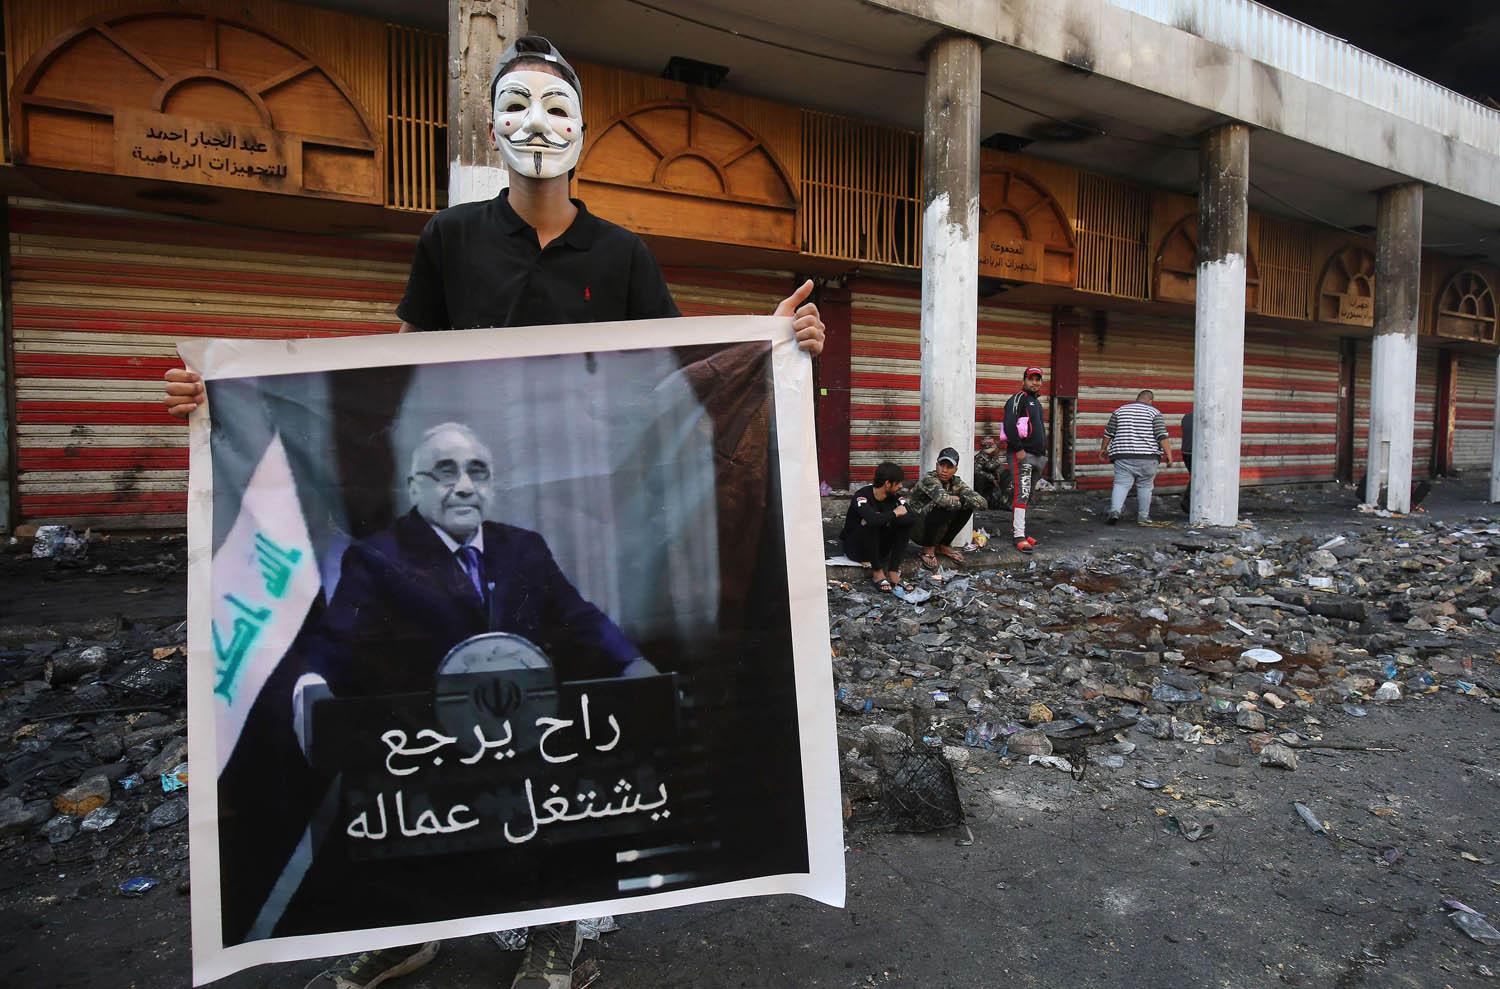 متظاهر يرفع صورة تسخر من رئيس الوزراء العراقي المستقيل عادل عبدالمهدي